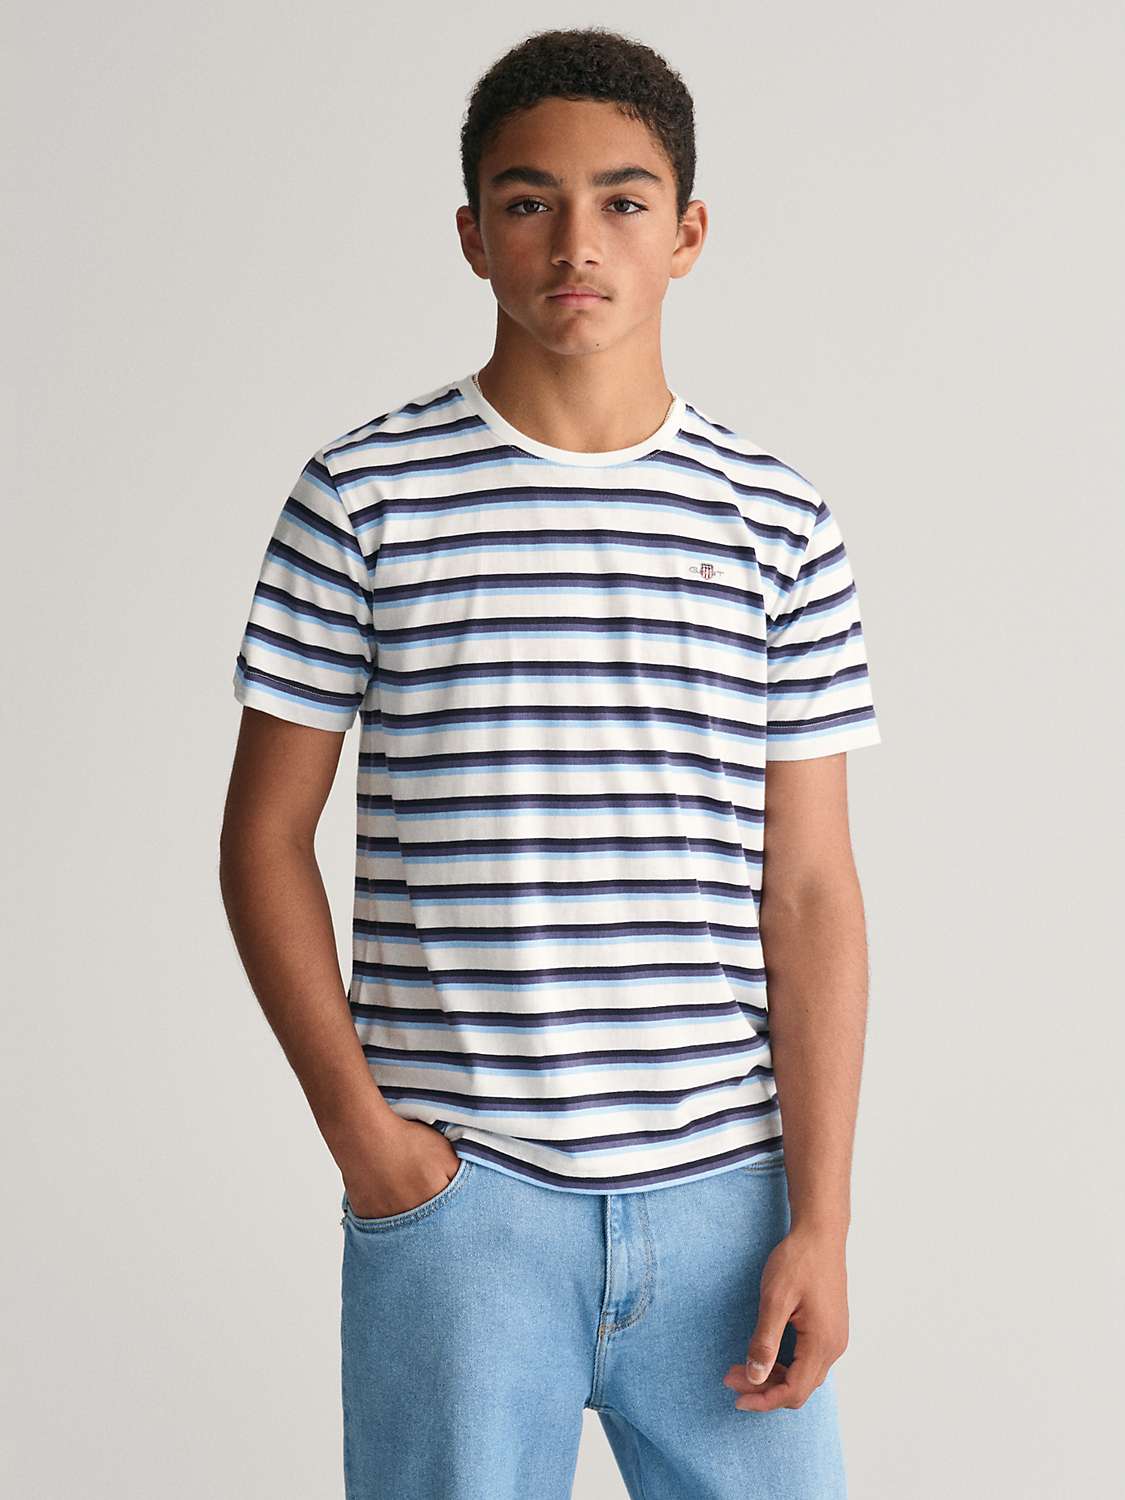 Buy GANT Kids' Stripe Short Sleeve T-Shirt, Blue/White Online at johnlewis.com